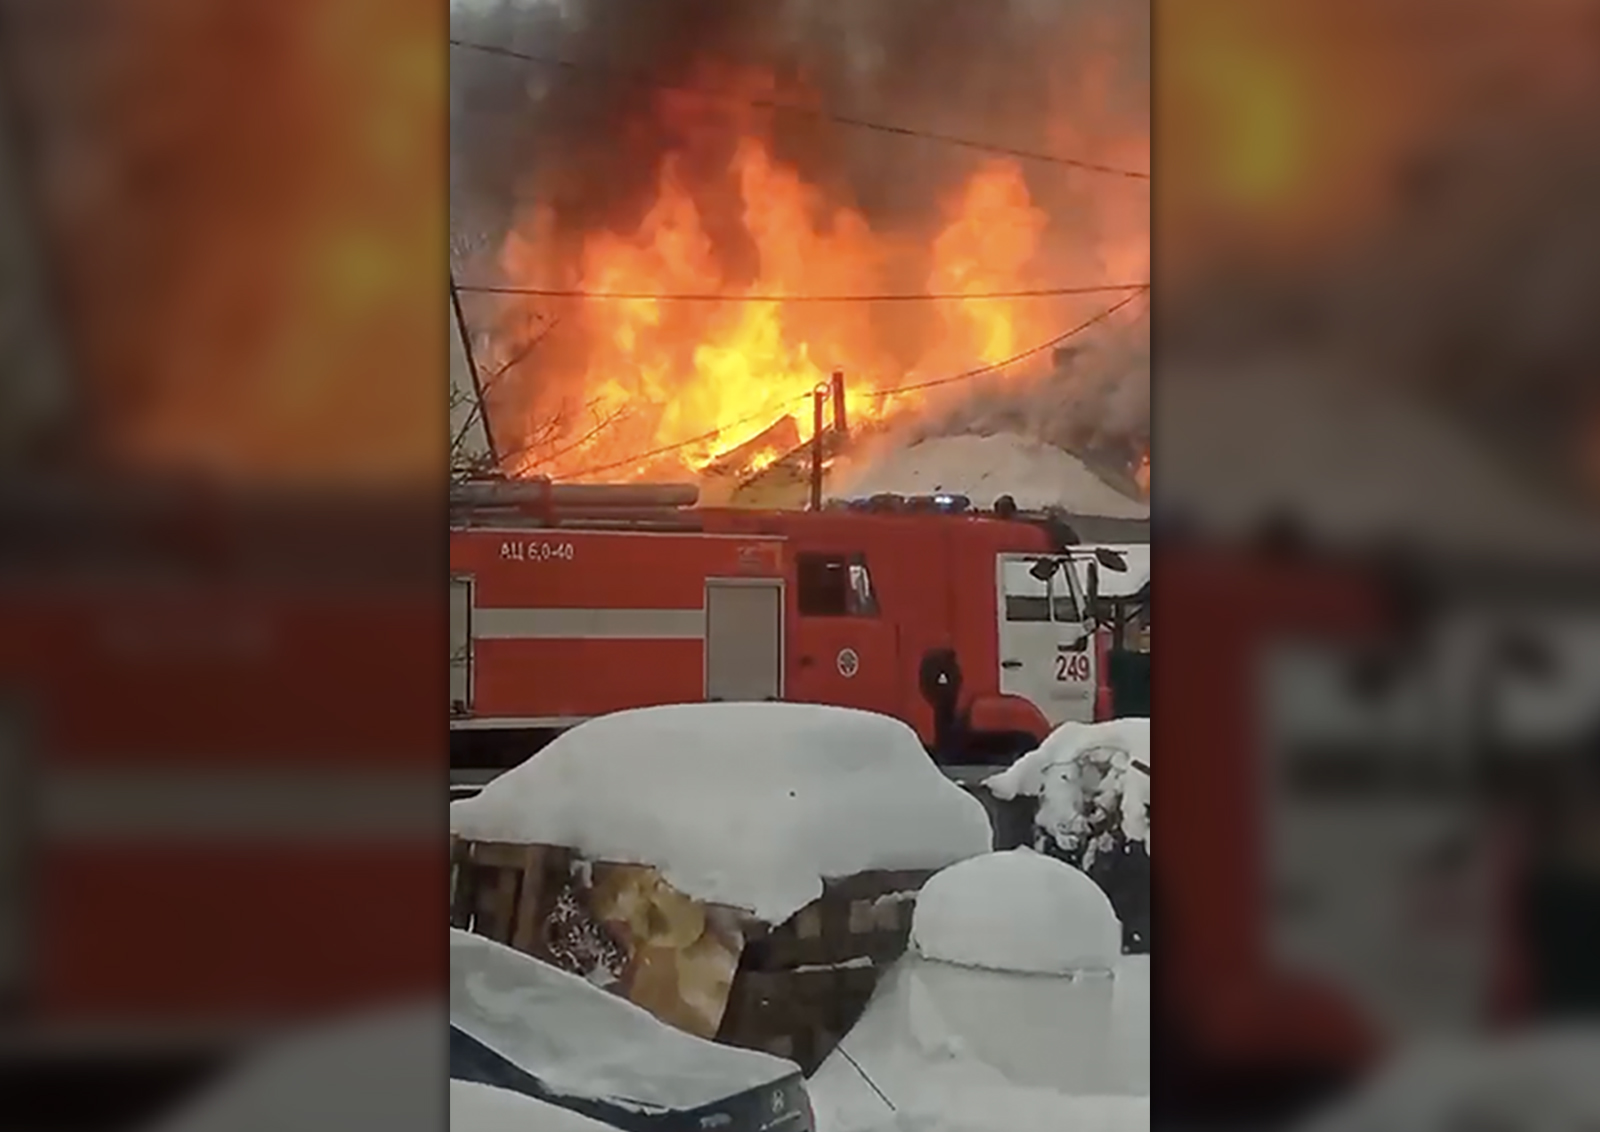 15 пожарных и 4 единицы техники понадобилось для тушения частного дома в Орехово-Зуево